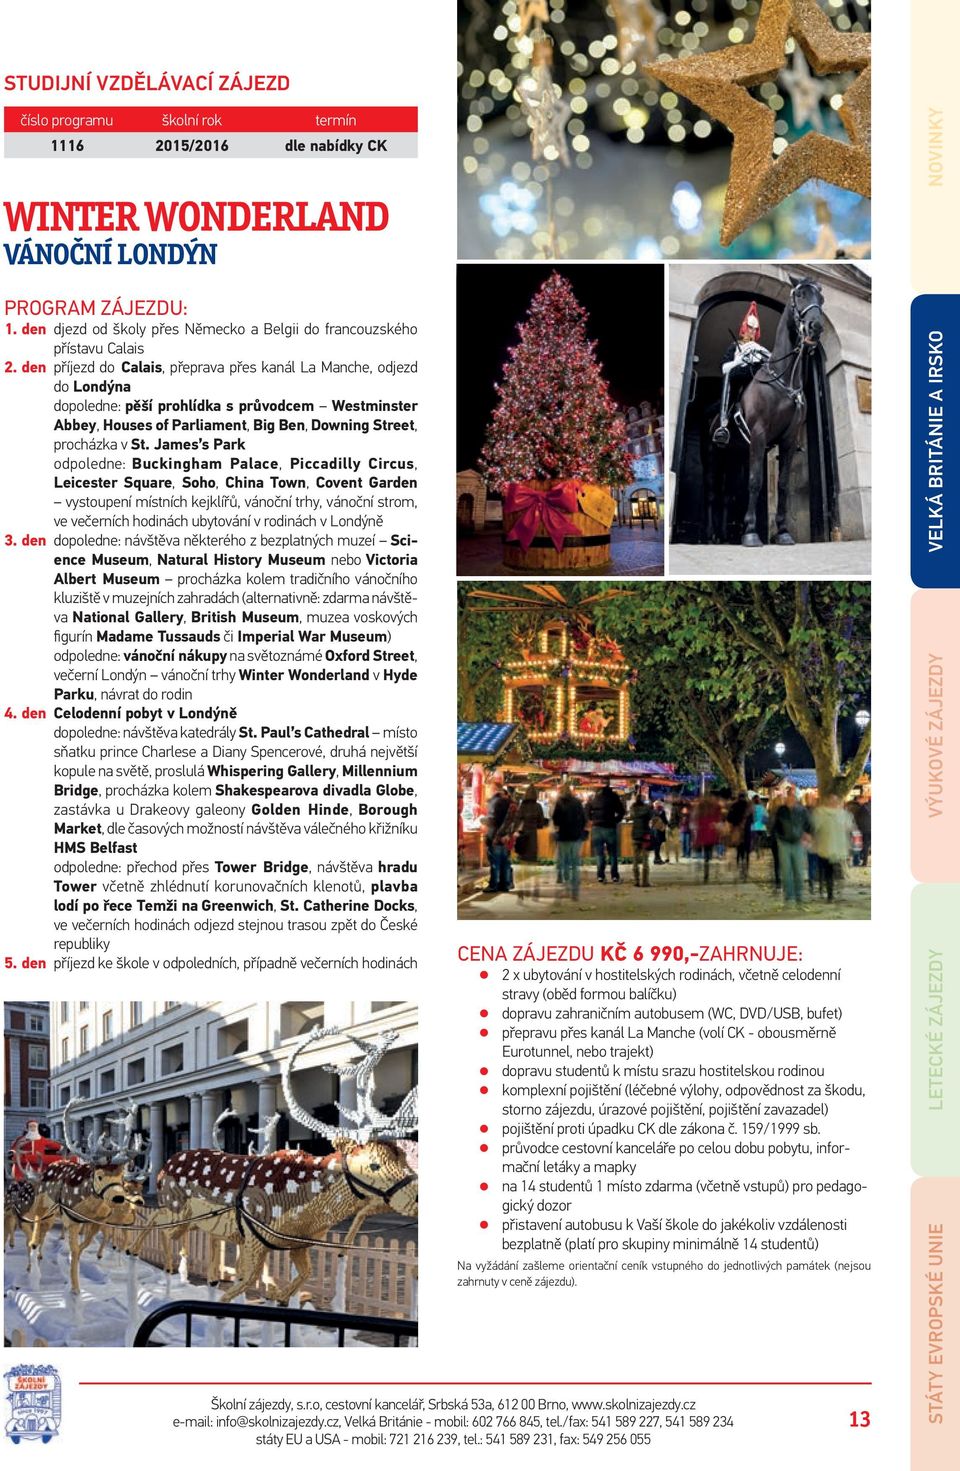 James s Park odpoledne: Buckingham Palace, Piccadilly Circus, Leicester Square, Soho, China Town, Covent Garden vystoupení místních kejklířů, vánoční trhy, vánoční strom, ve večerních hodinách